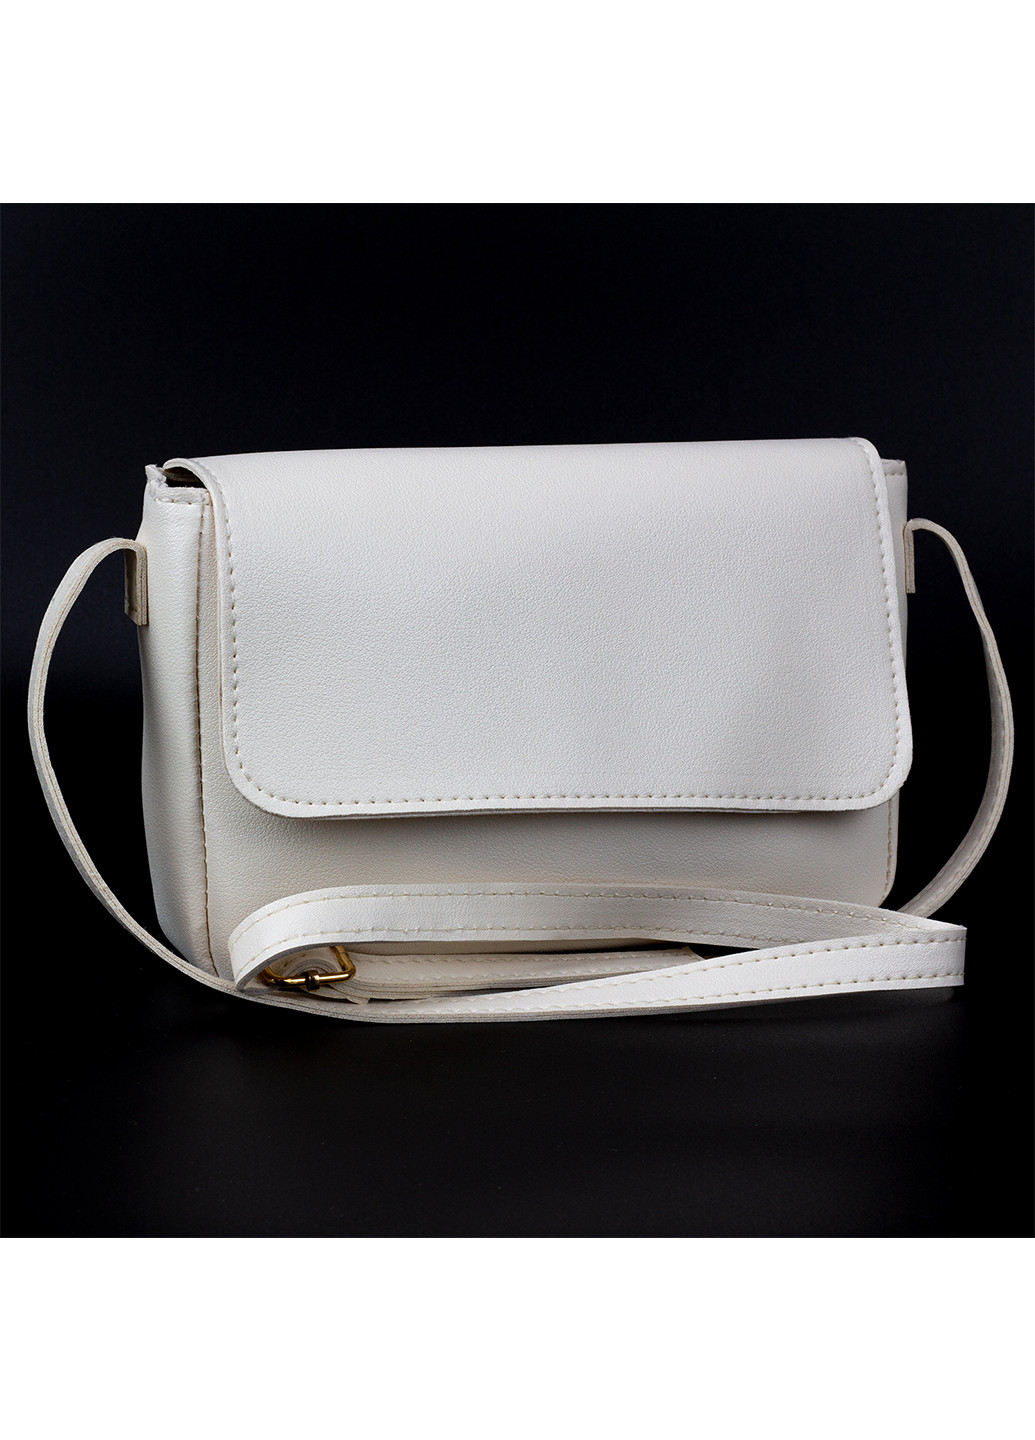 Жіноча невелика сумка біла Corze ab14053 (260026880)